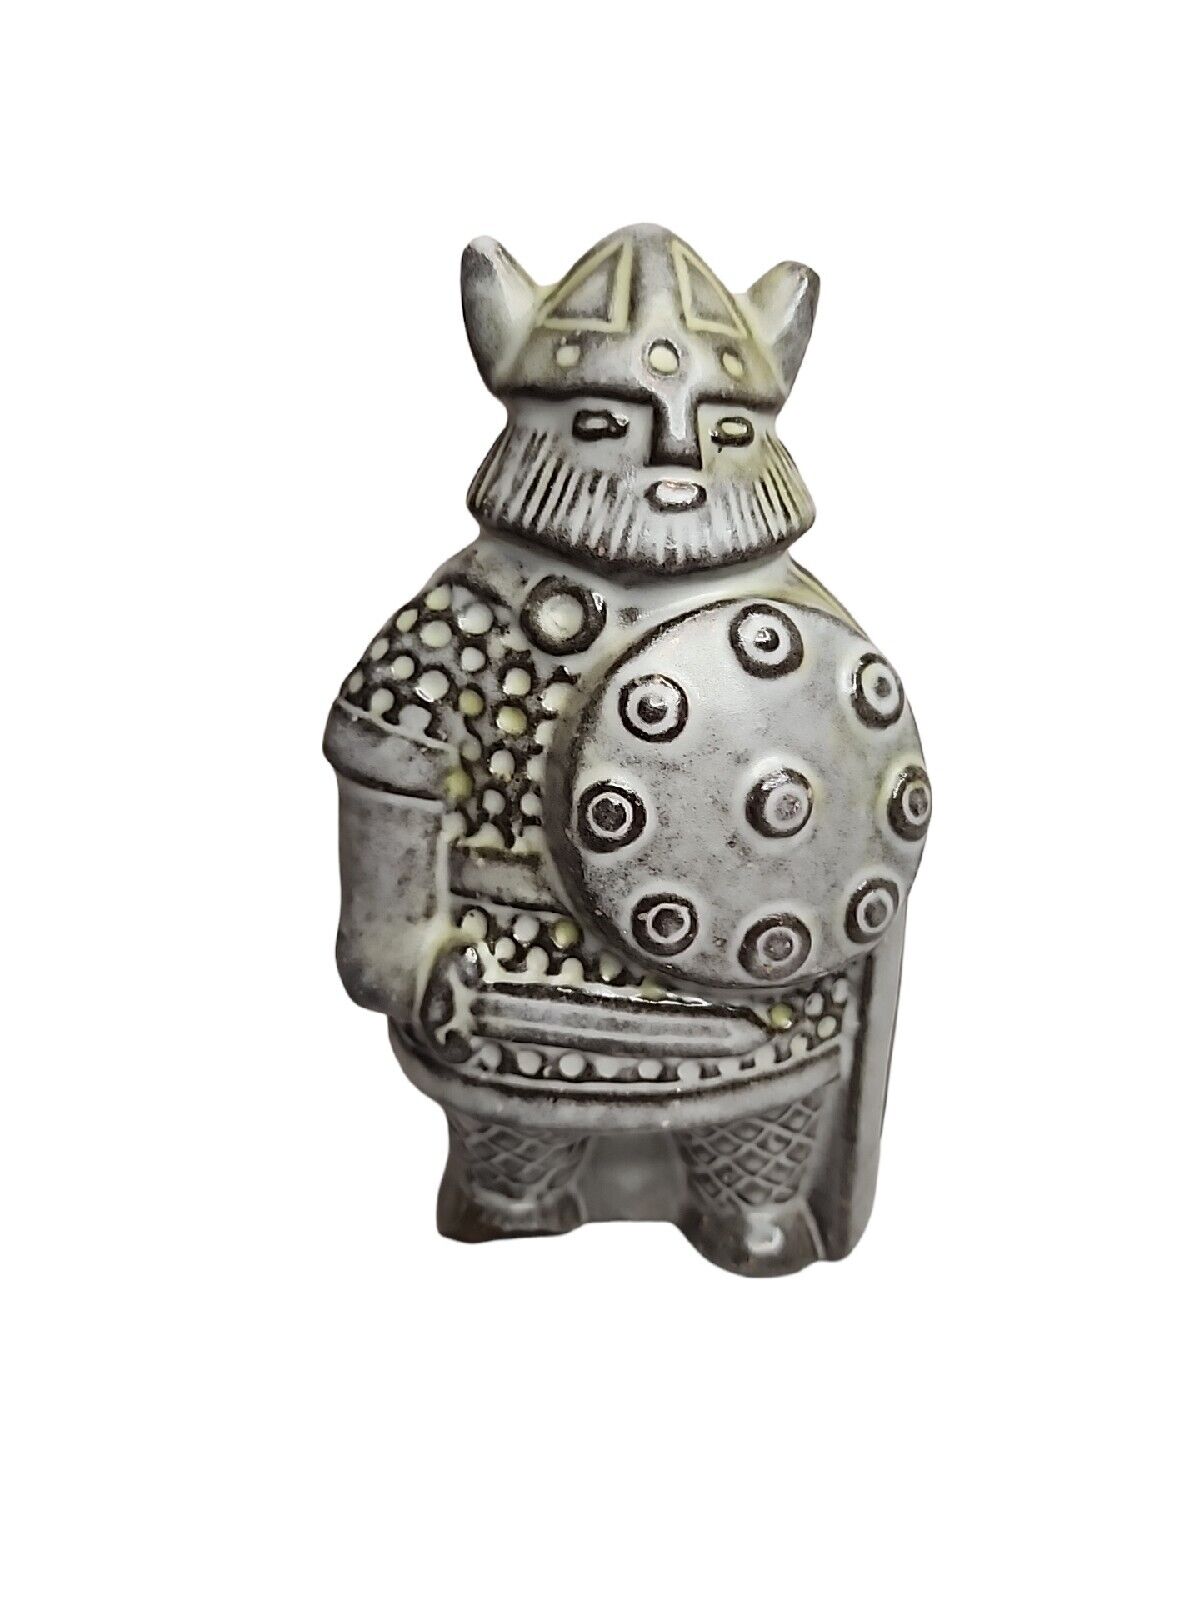 Upsala Ekeby Viking figurine Taisto Kaasinen Sweden #6064